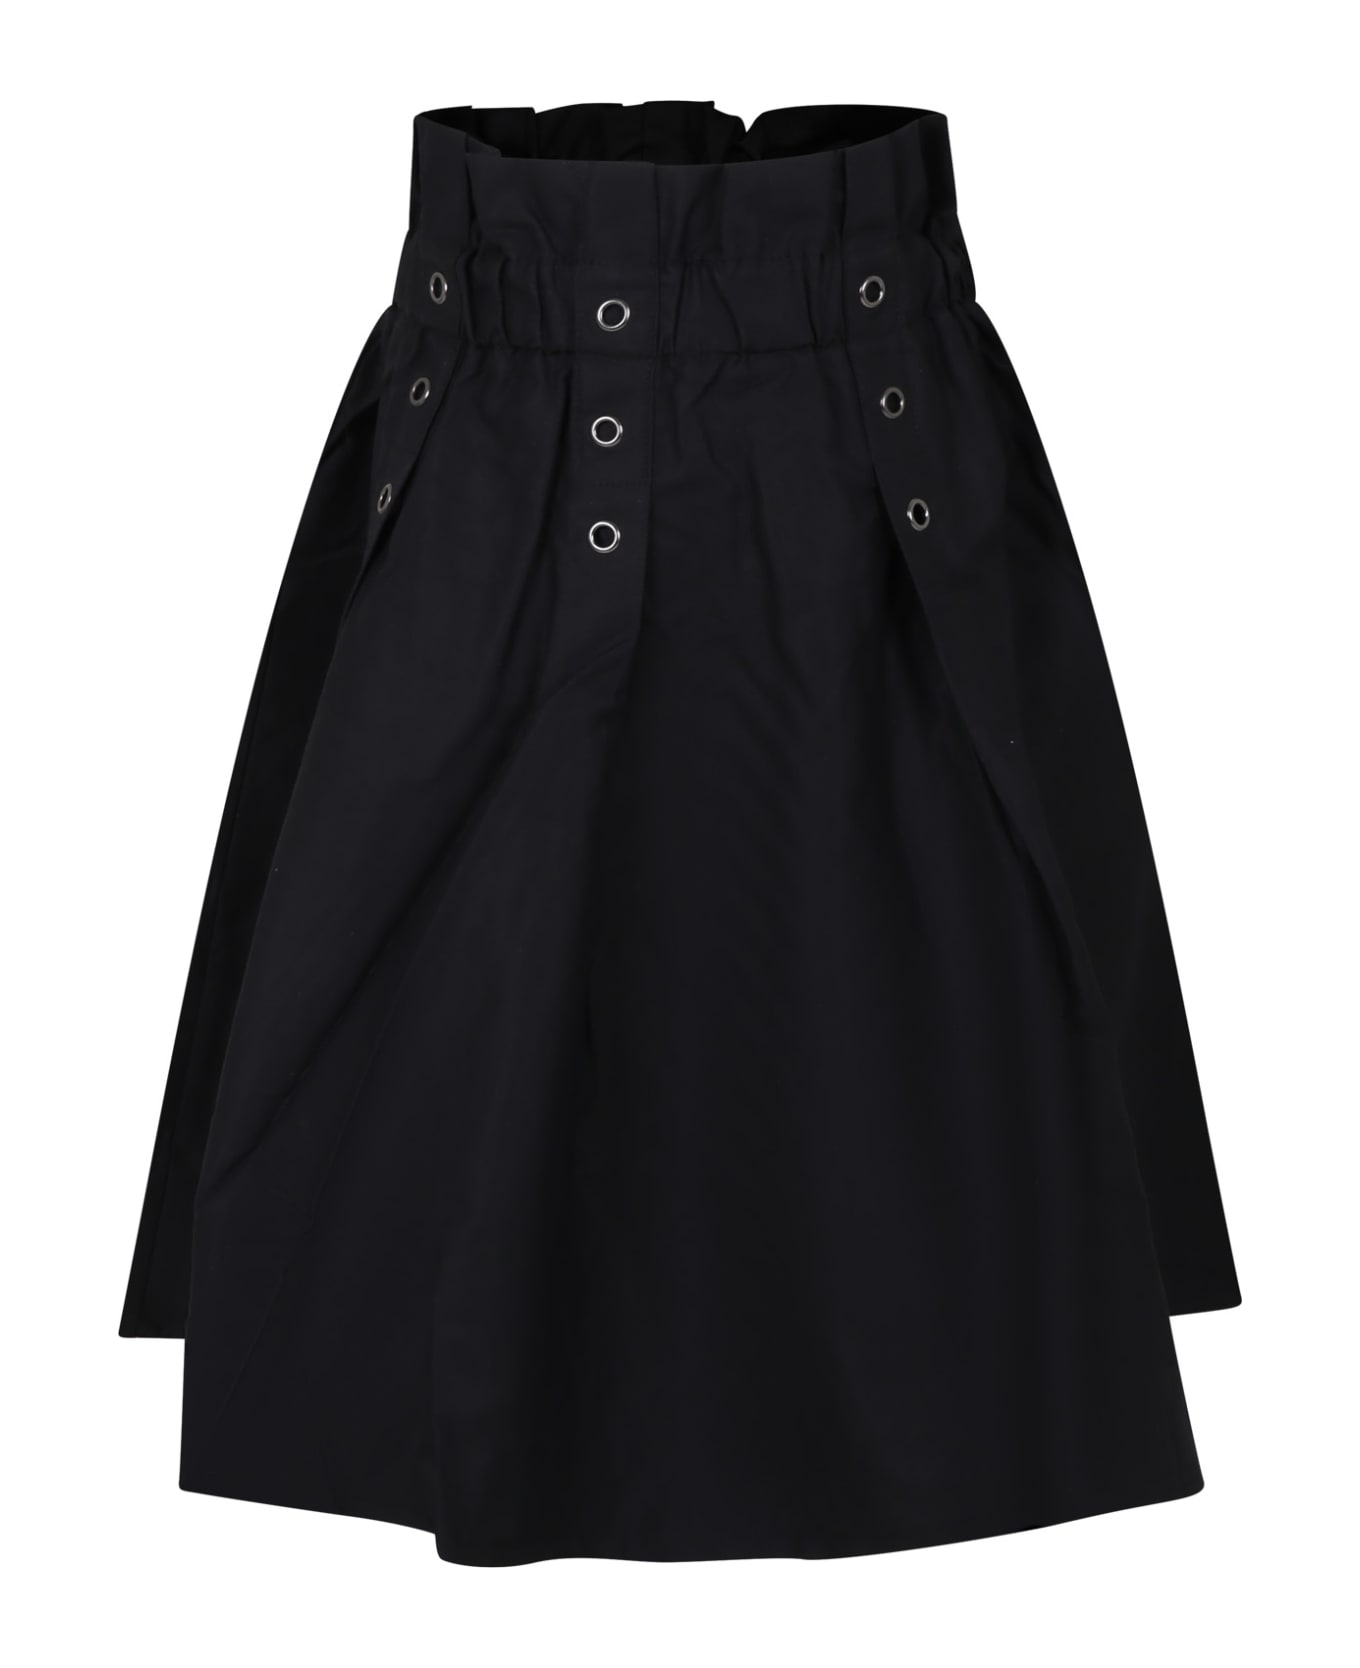 DKNY Black Casual Skirt For Girl - Black